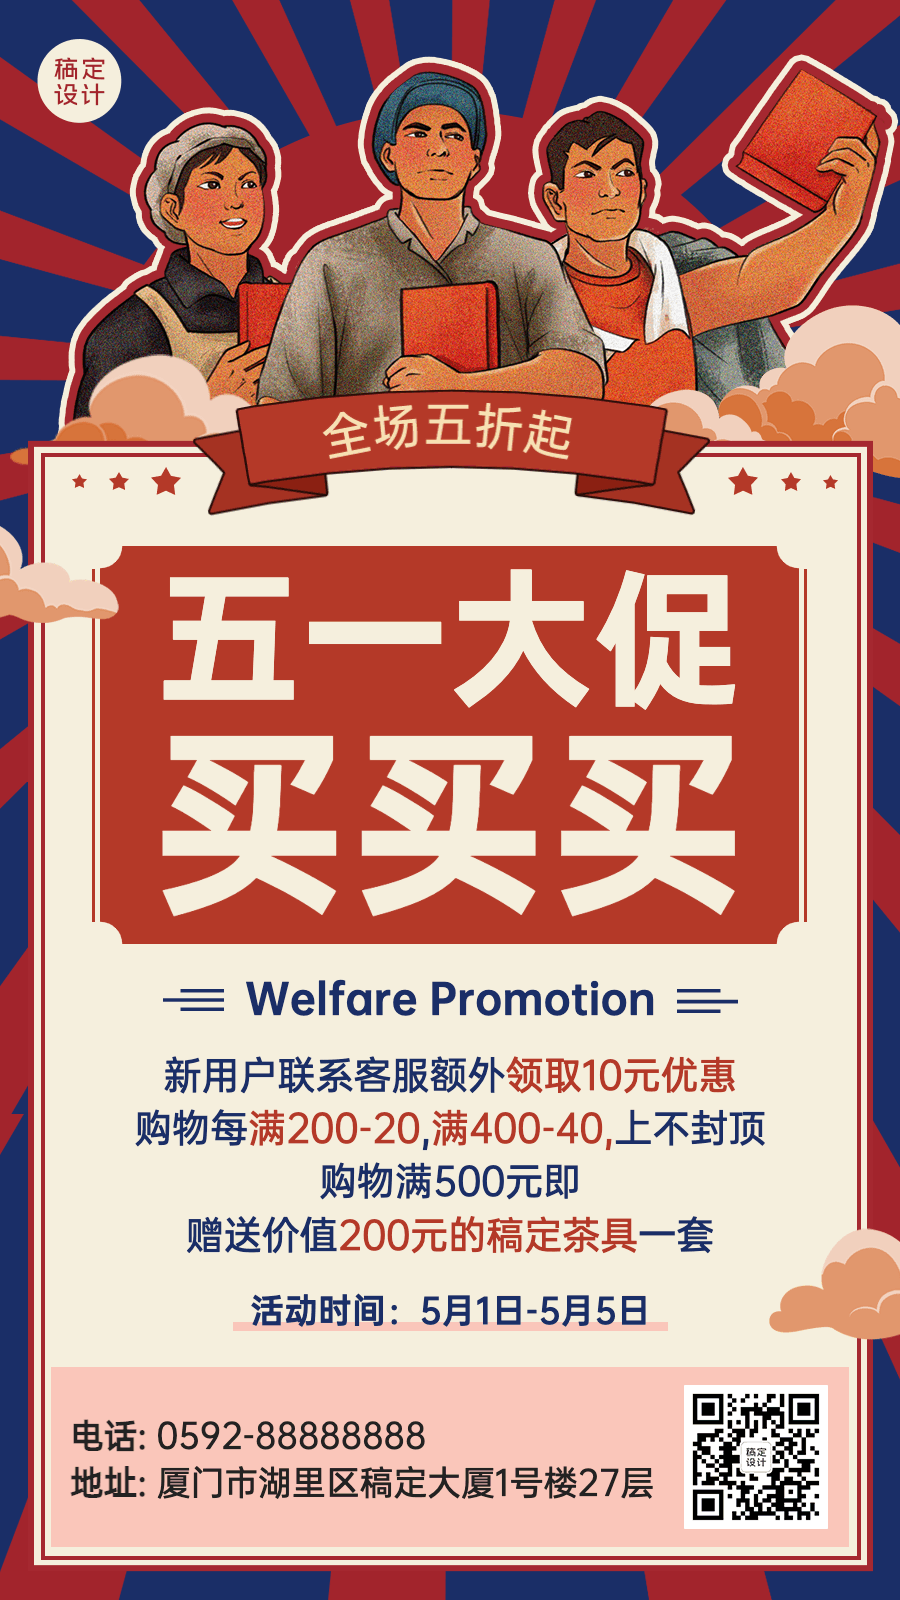 劳动节节日促销排版动态海报